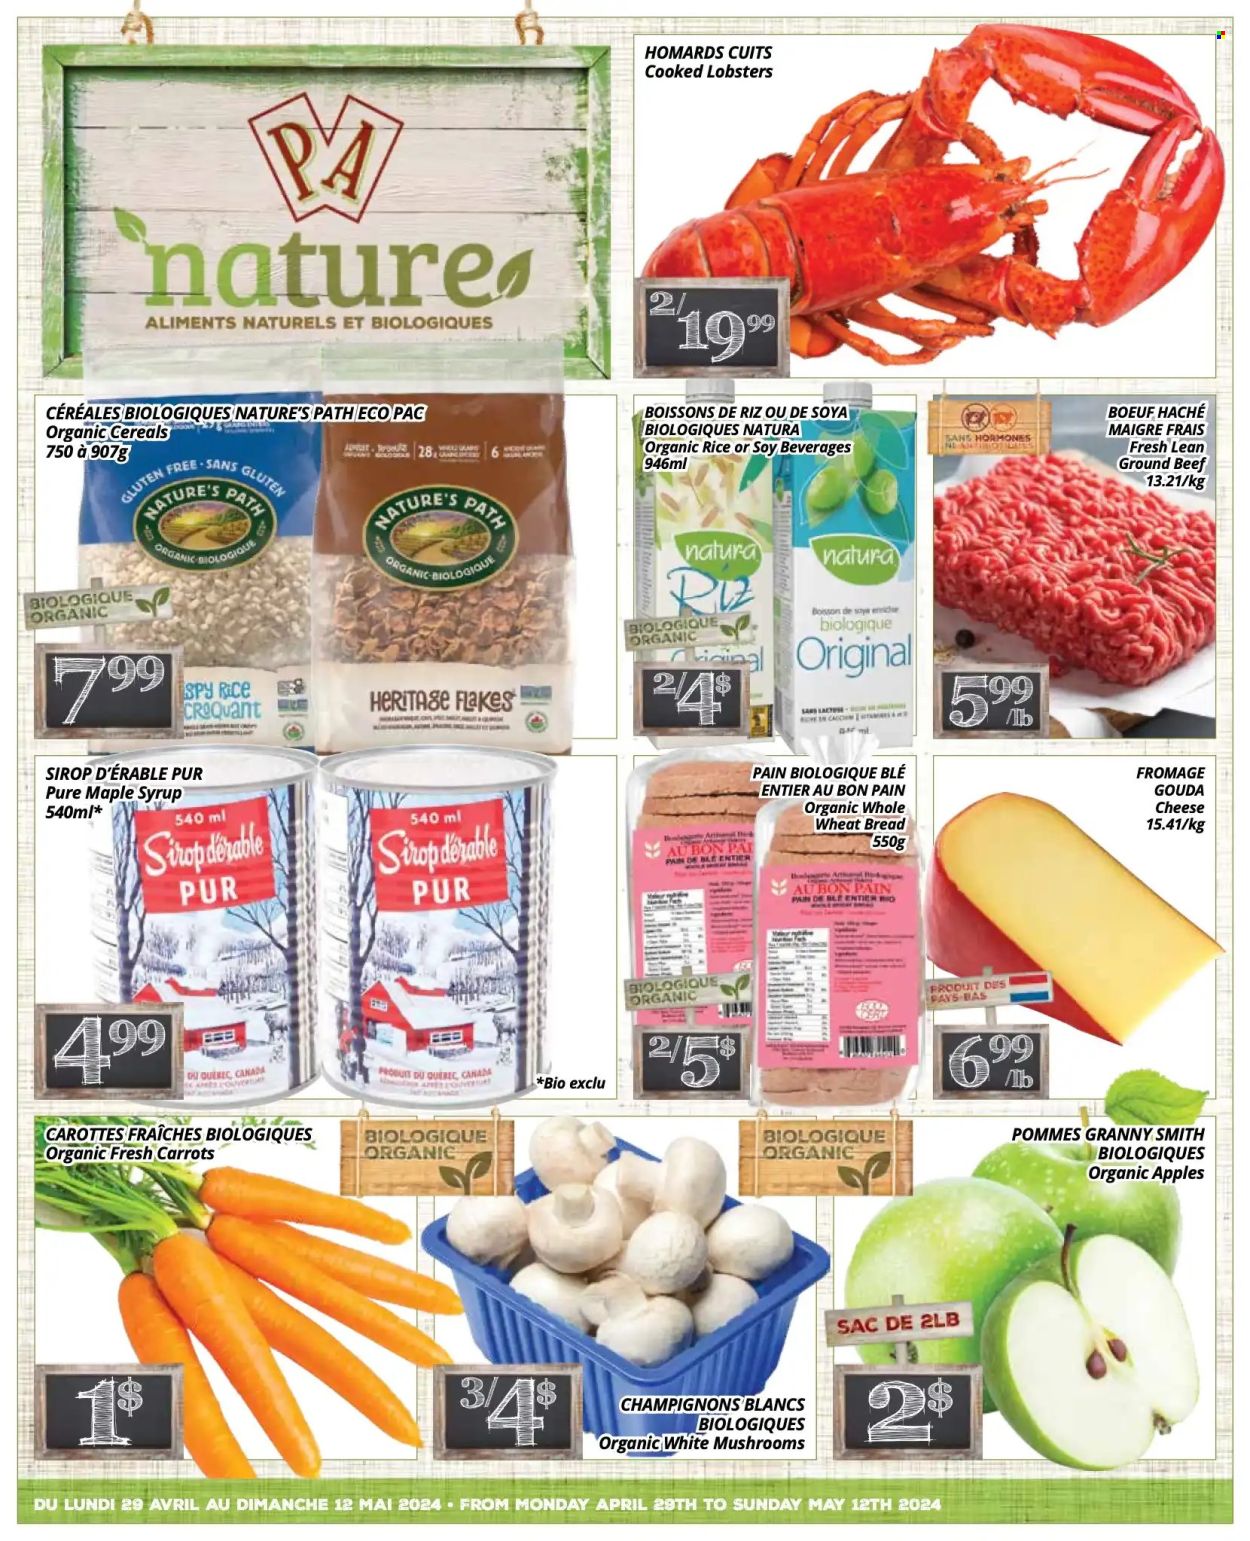 thumbnail - Circulaire PA Nature - 29 Avril 2024 - 12 Mai 2024 - Produits soldés - carotte, champignon, viande boeuf, viande hachée, fromage, boisson végétale, sirop. Page 1.